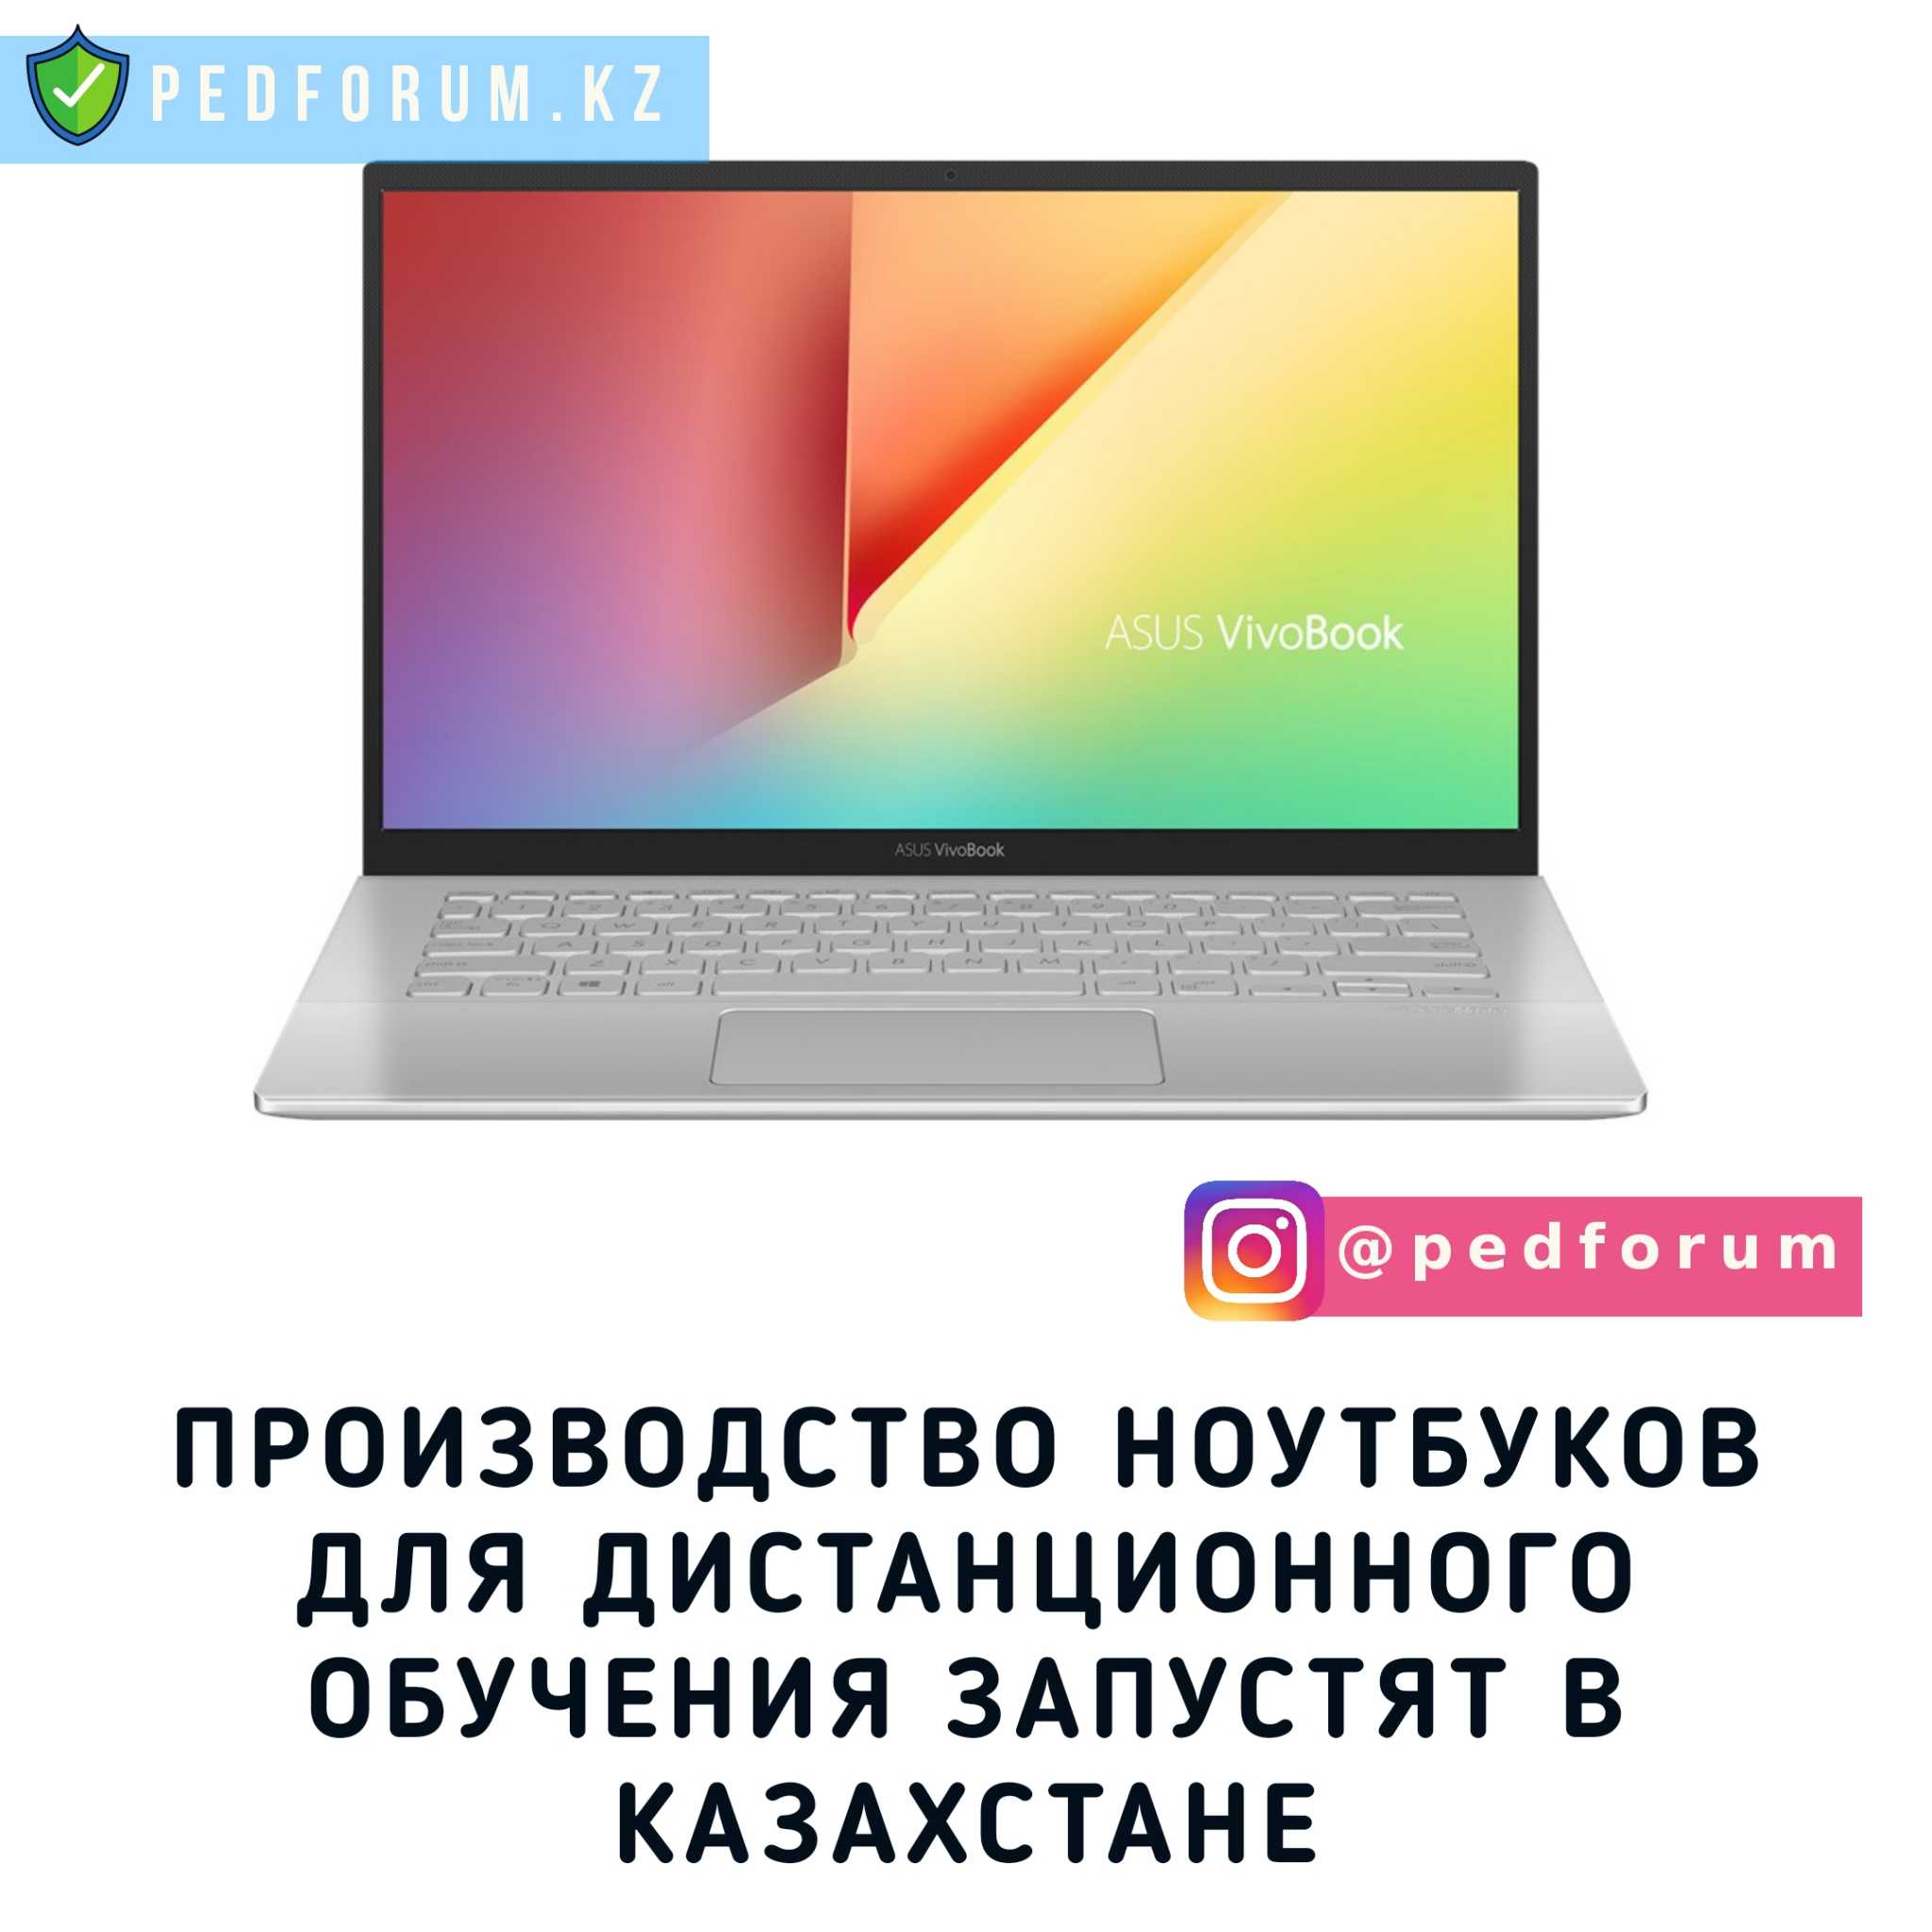 Производство ноутбуков для дистанционного обучения запустили в Казахстане